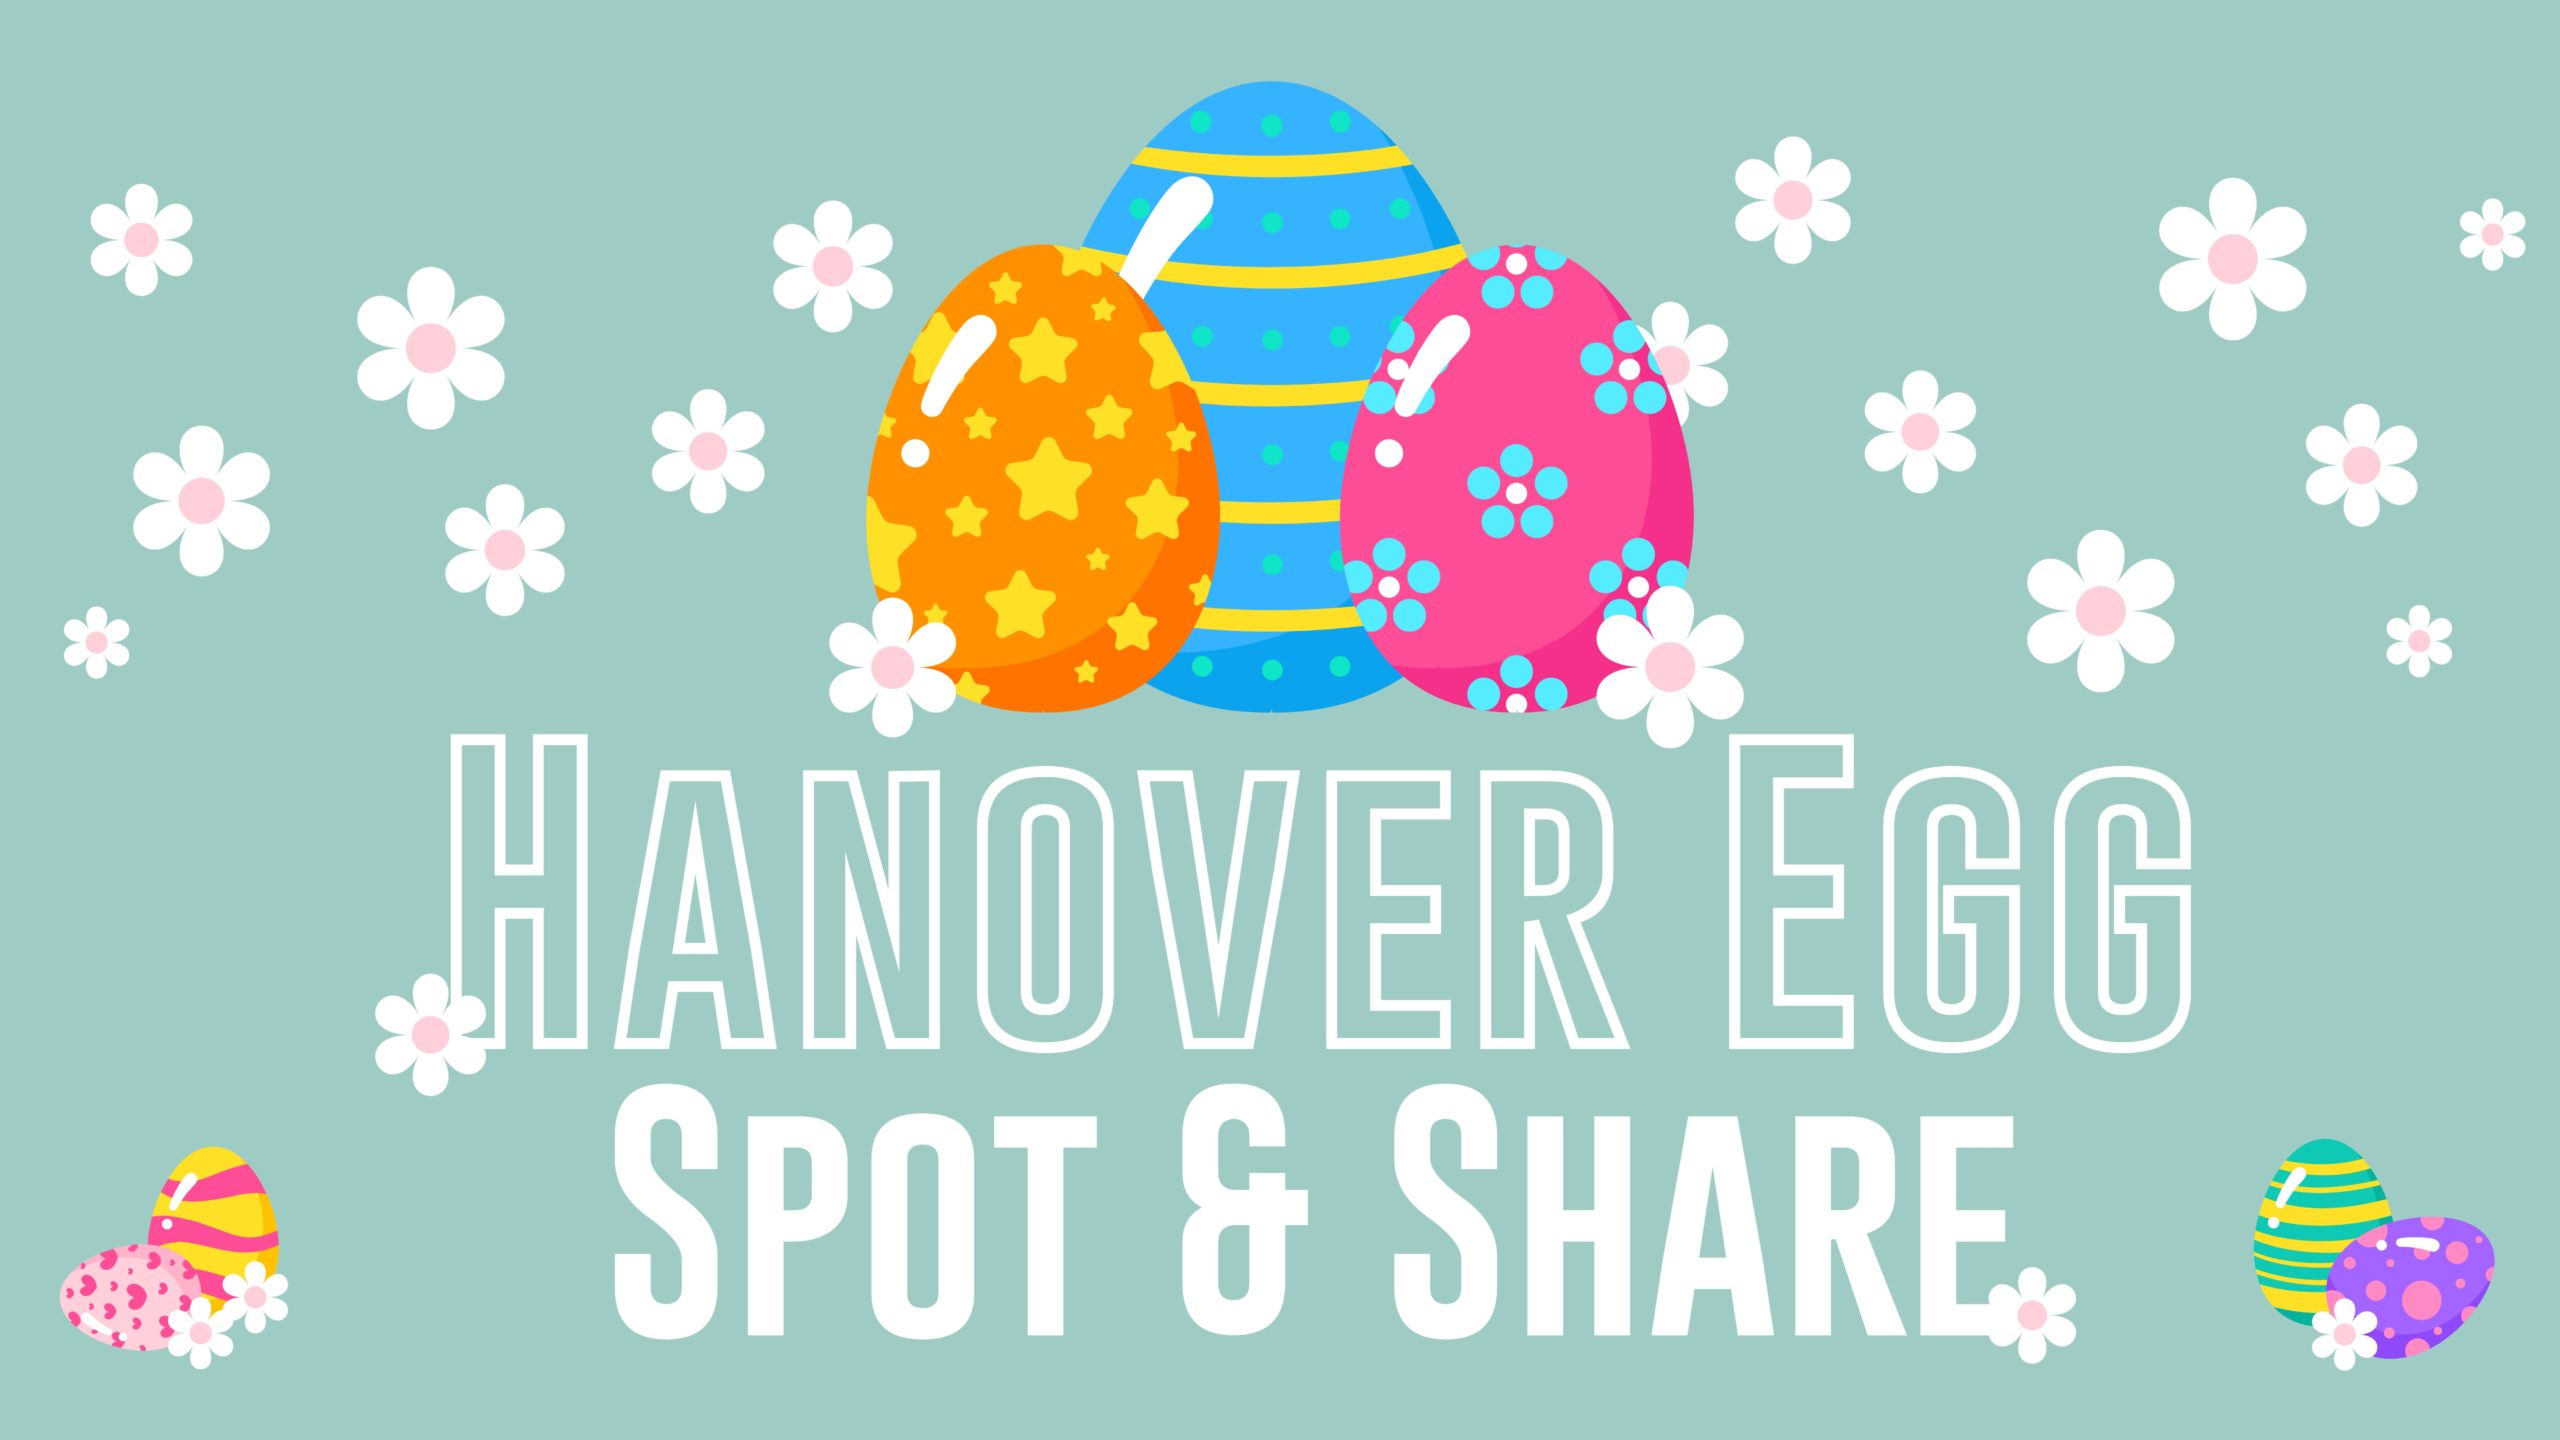 Hanover Egg Spot & Share